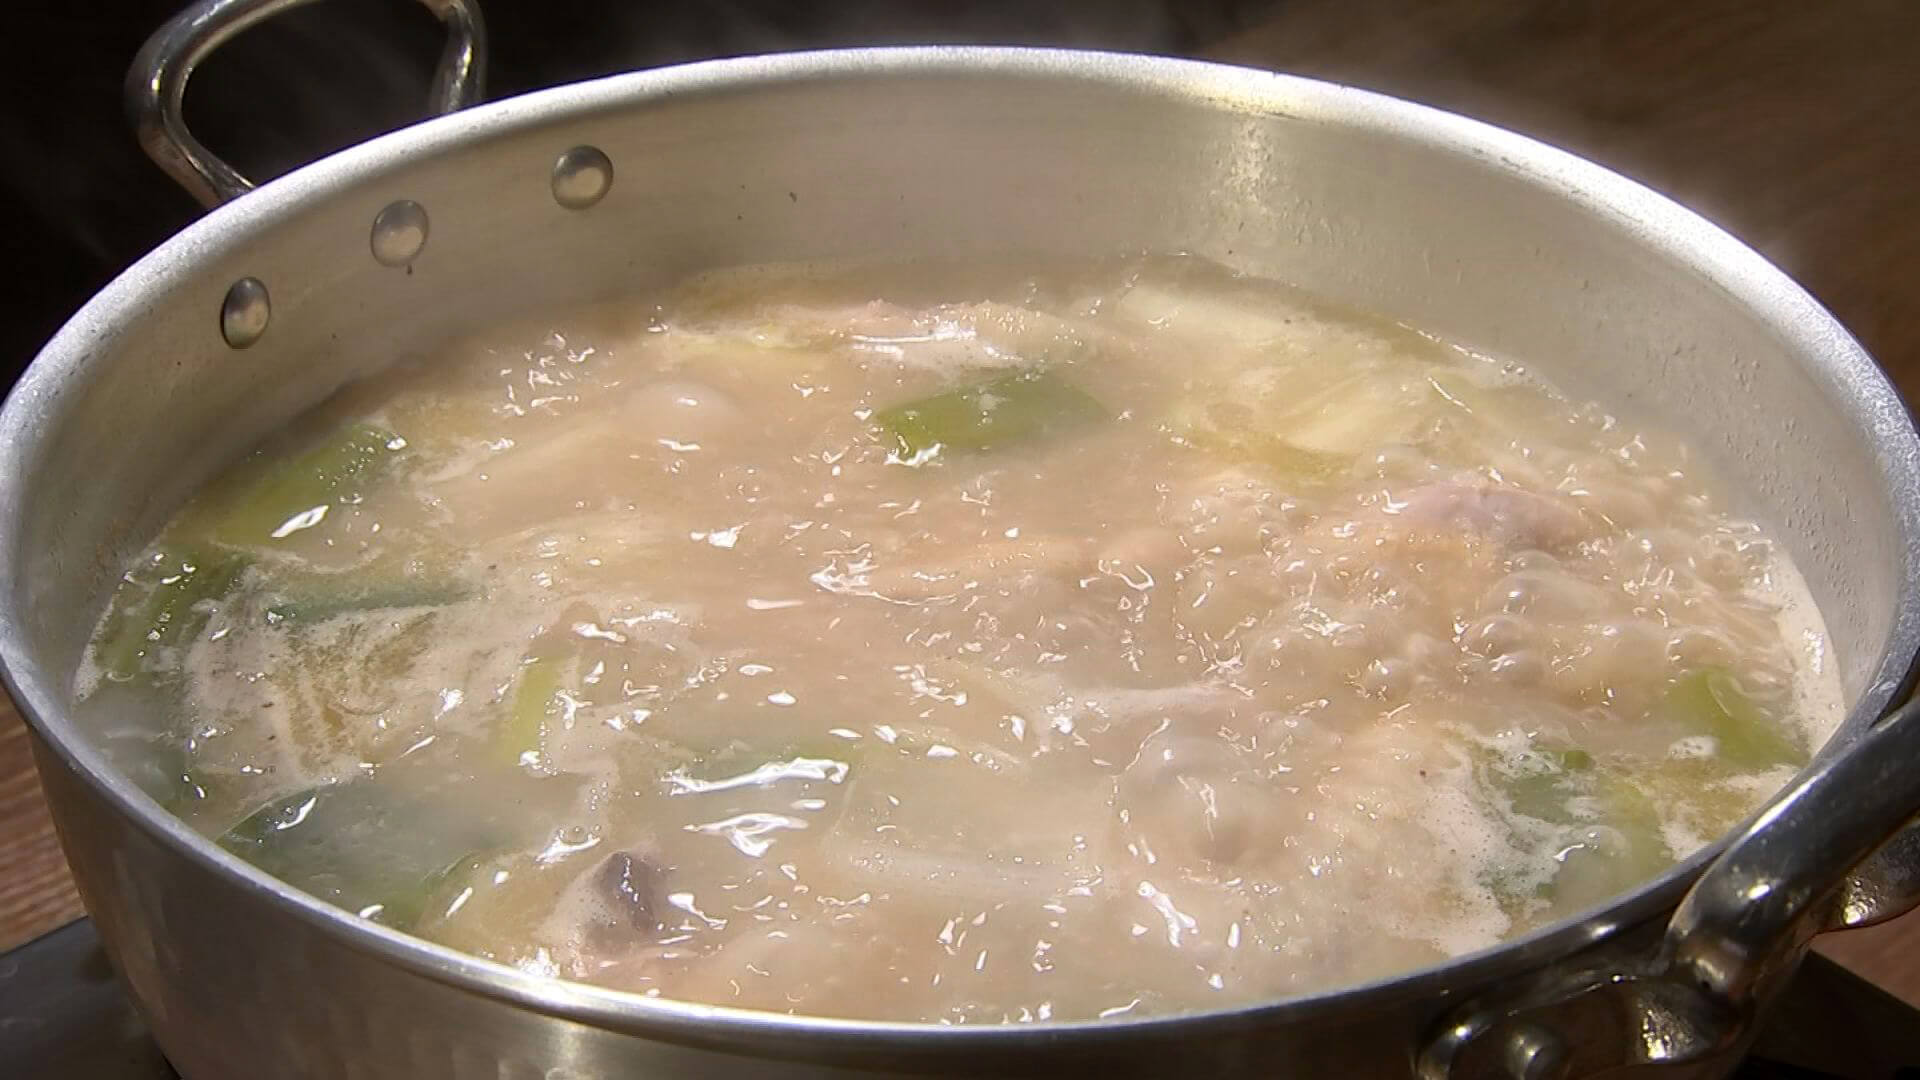 鶏肉を丸ごと煮込んだ韓国の鍋料理　食べるエステ と呼ばれている　スープを一口飲んだ河合さんのテンションMAX　おいひっの連発